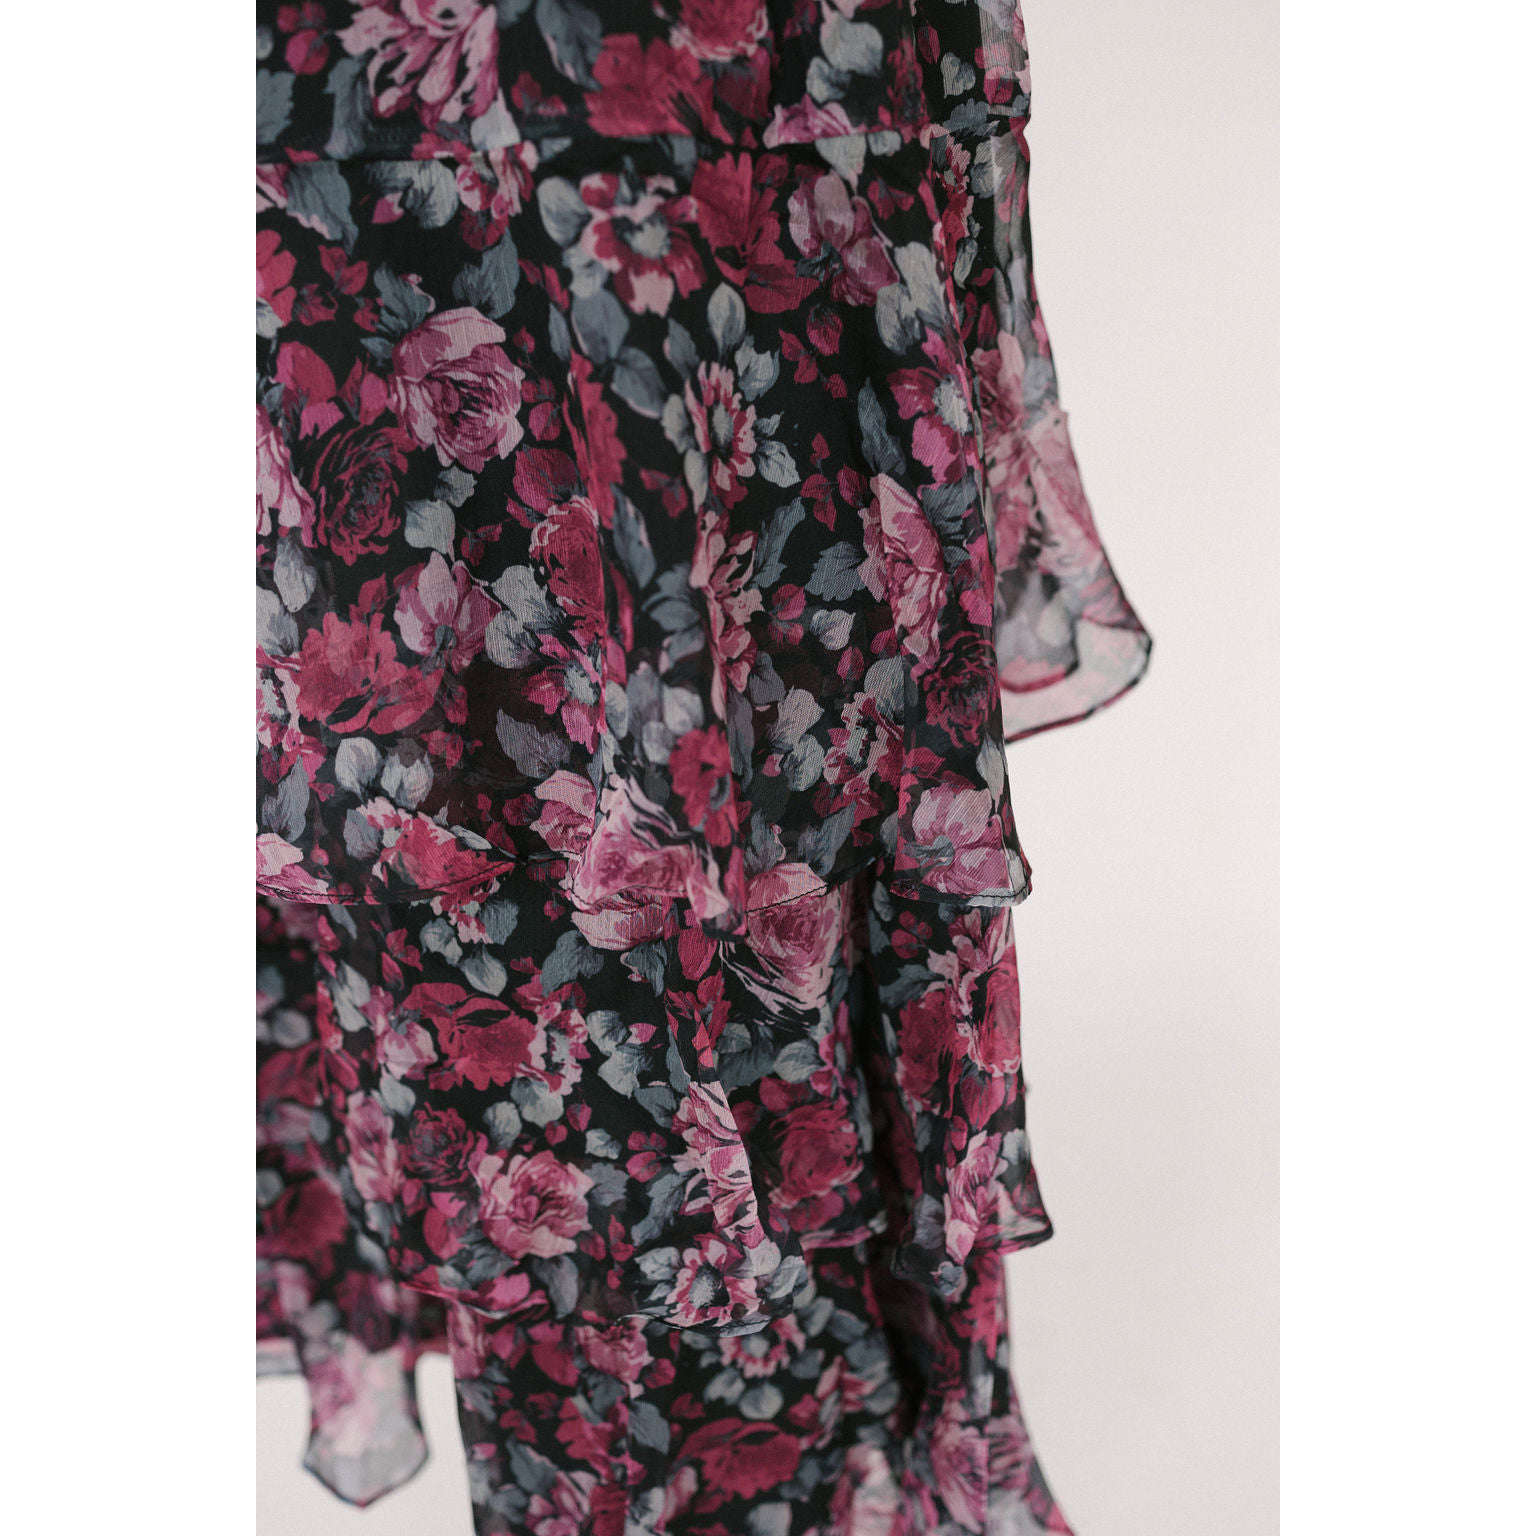 8.28 Boutique:LUCY PARIS,Lucy Paris Claire Tiered Dress,Dress